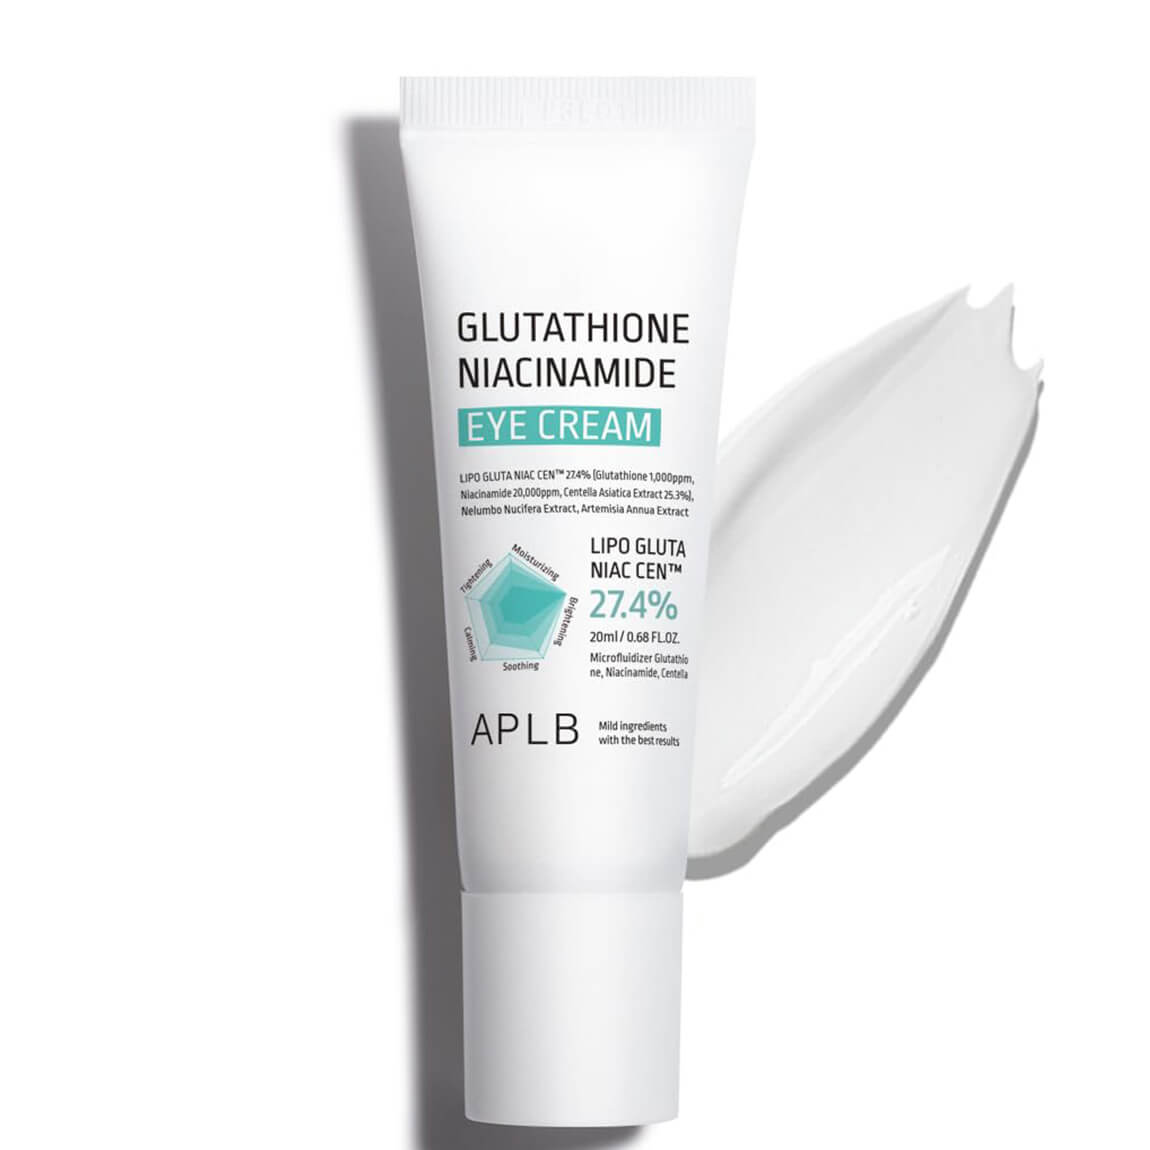 APLB - Glutathione Niacinamide Eye Cream, 20ml